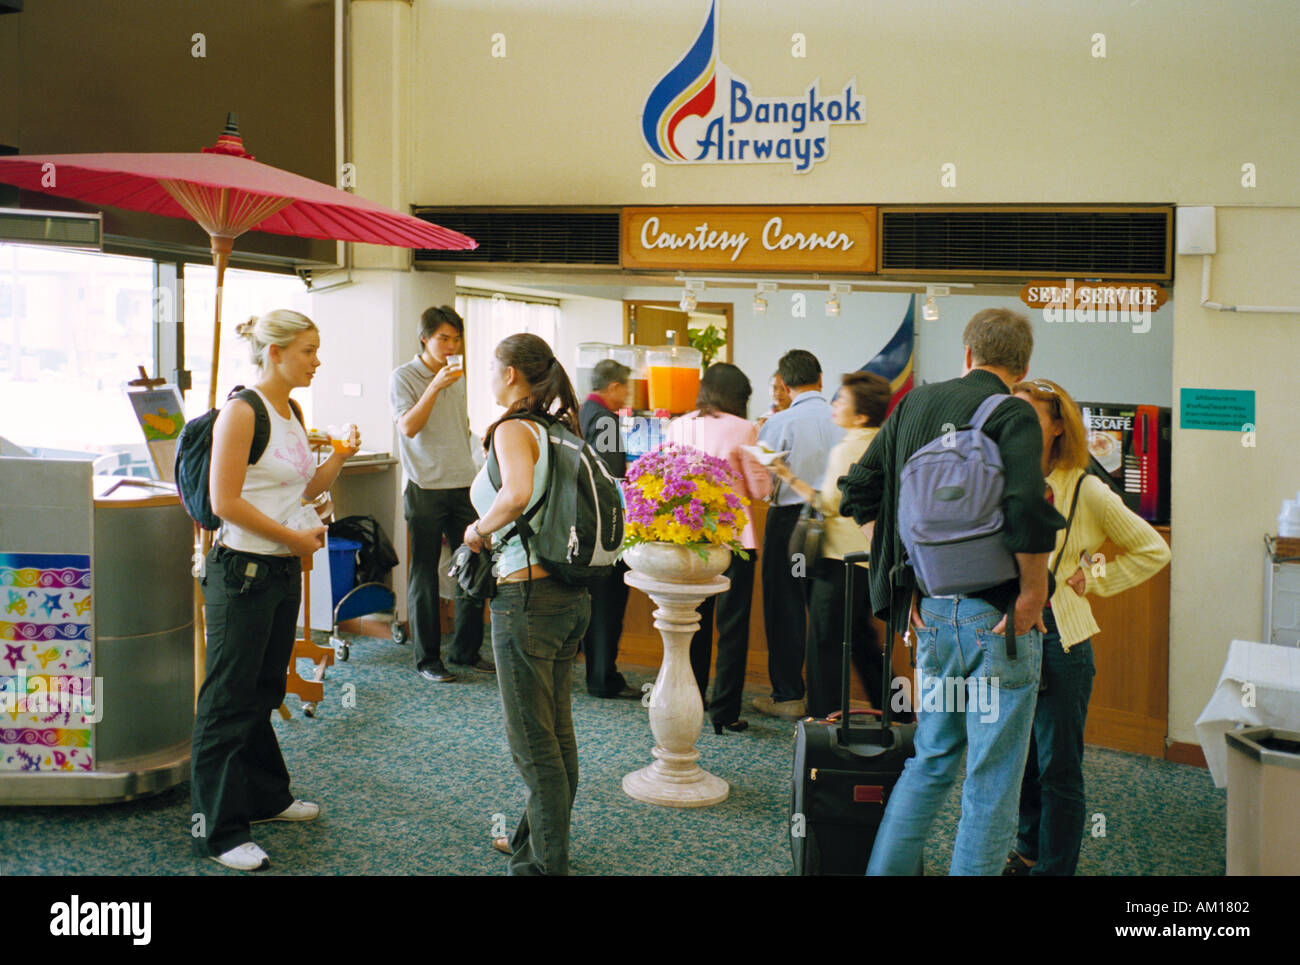 Die Höflichkeit-Ecke in der Abflughalle für Bangkok Airways am Flughafen Bangkok wo kostenlos Saft und Obst zur Verfügung stehen Stockfoto